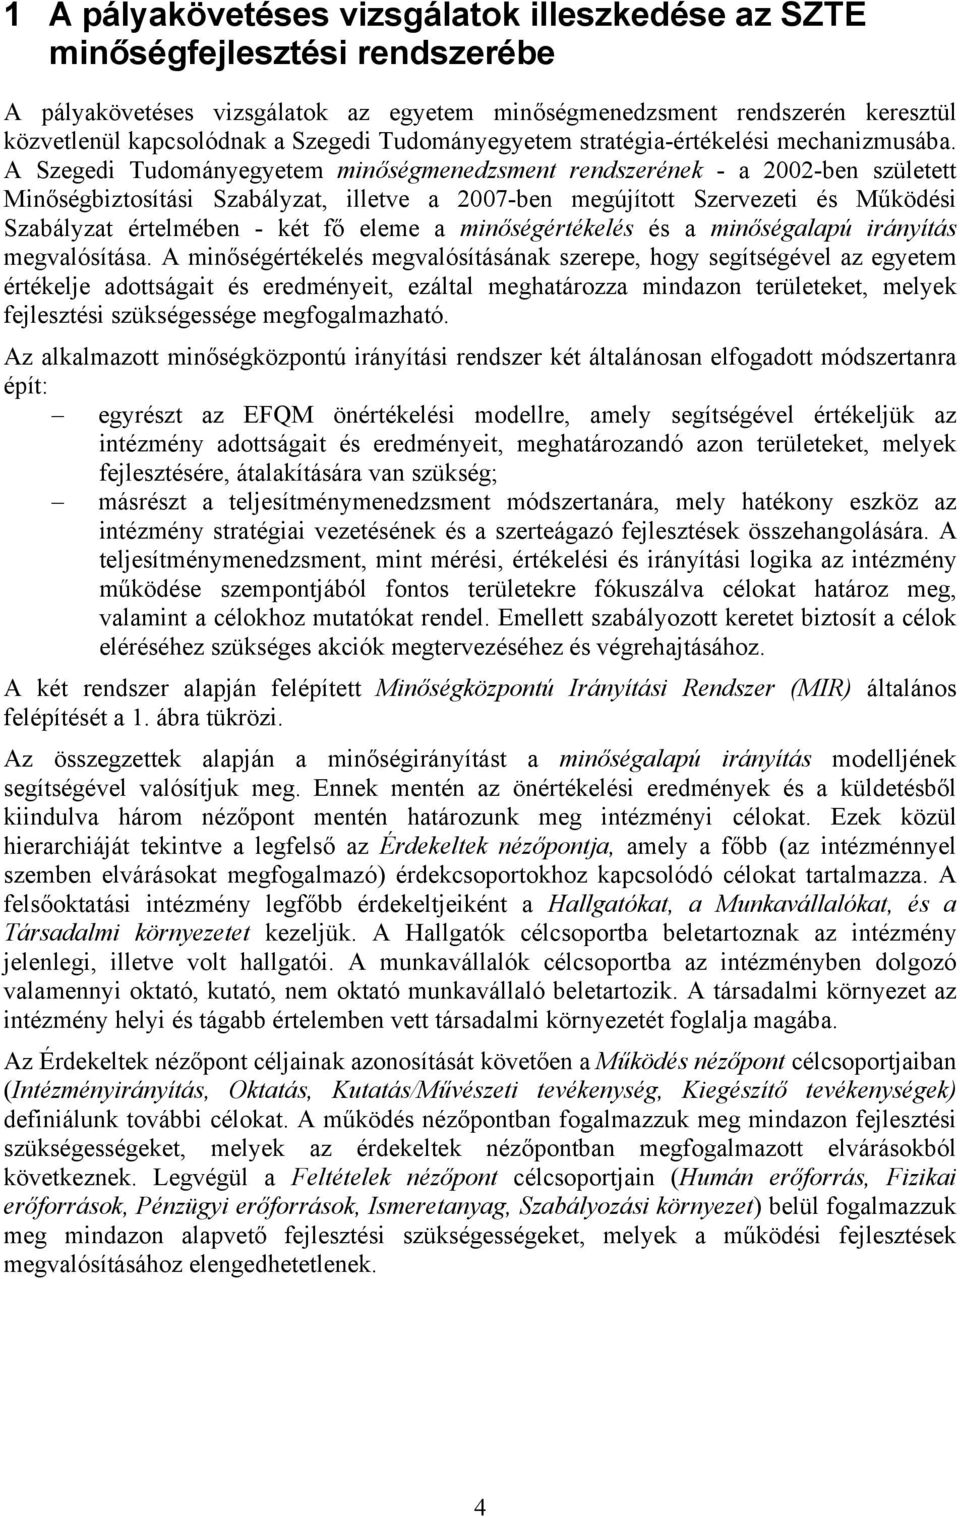 A Szegedi Tudományegyetem minőségmenedzsment rendszerének - a 2002-ben született Minőségbiztosítási Szabályzat, illetve a 2007-ben megújított Szervezeti és Működési Szabályzat értelmében - két fő